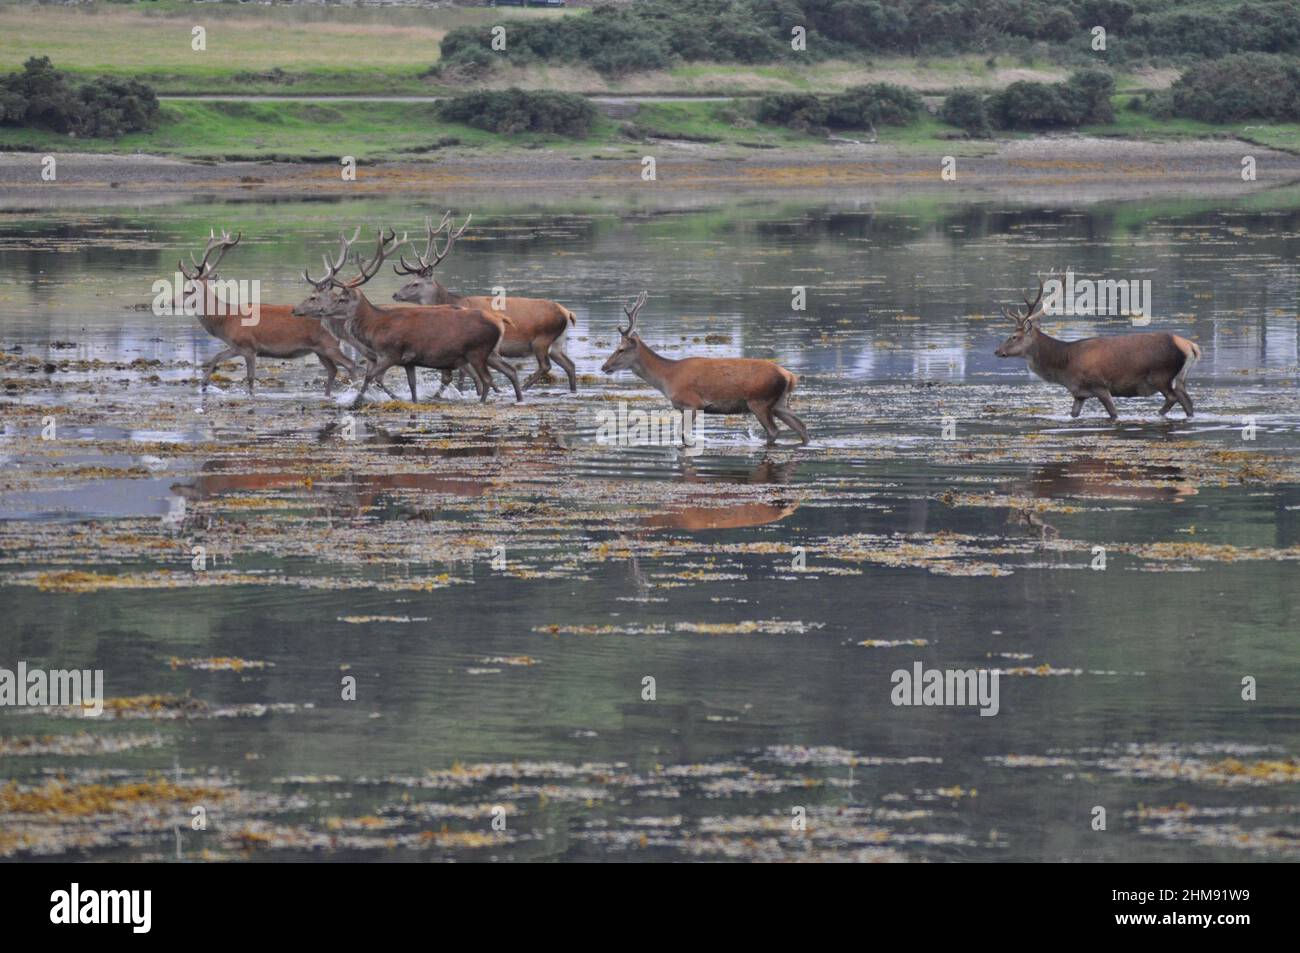 6 stags a piedi nelle acque di Loch Ranza (Lochranza, Isola di Arran Scozia - UK) raffreddamento fuori dopo un caldo giorno di agosto Foto Stock